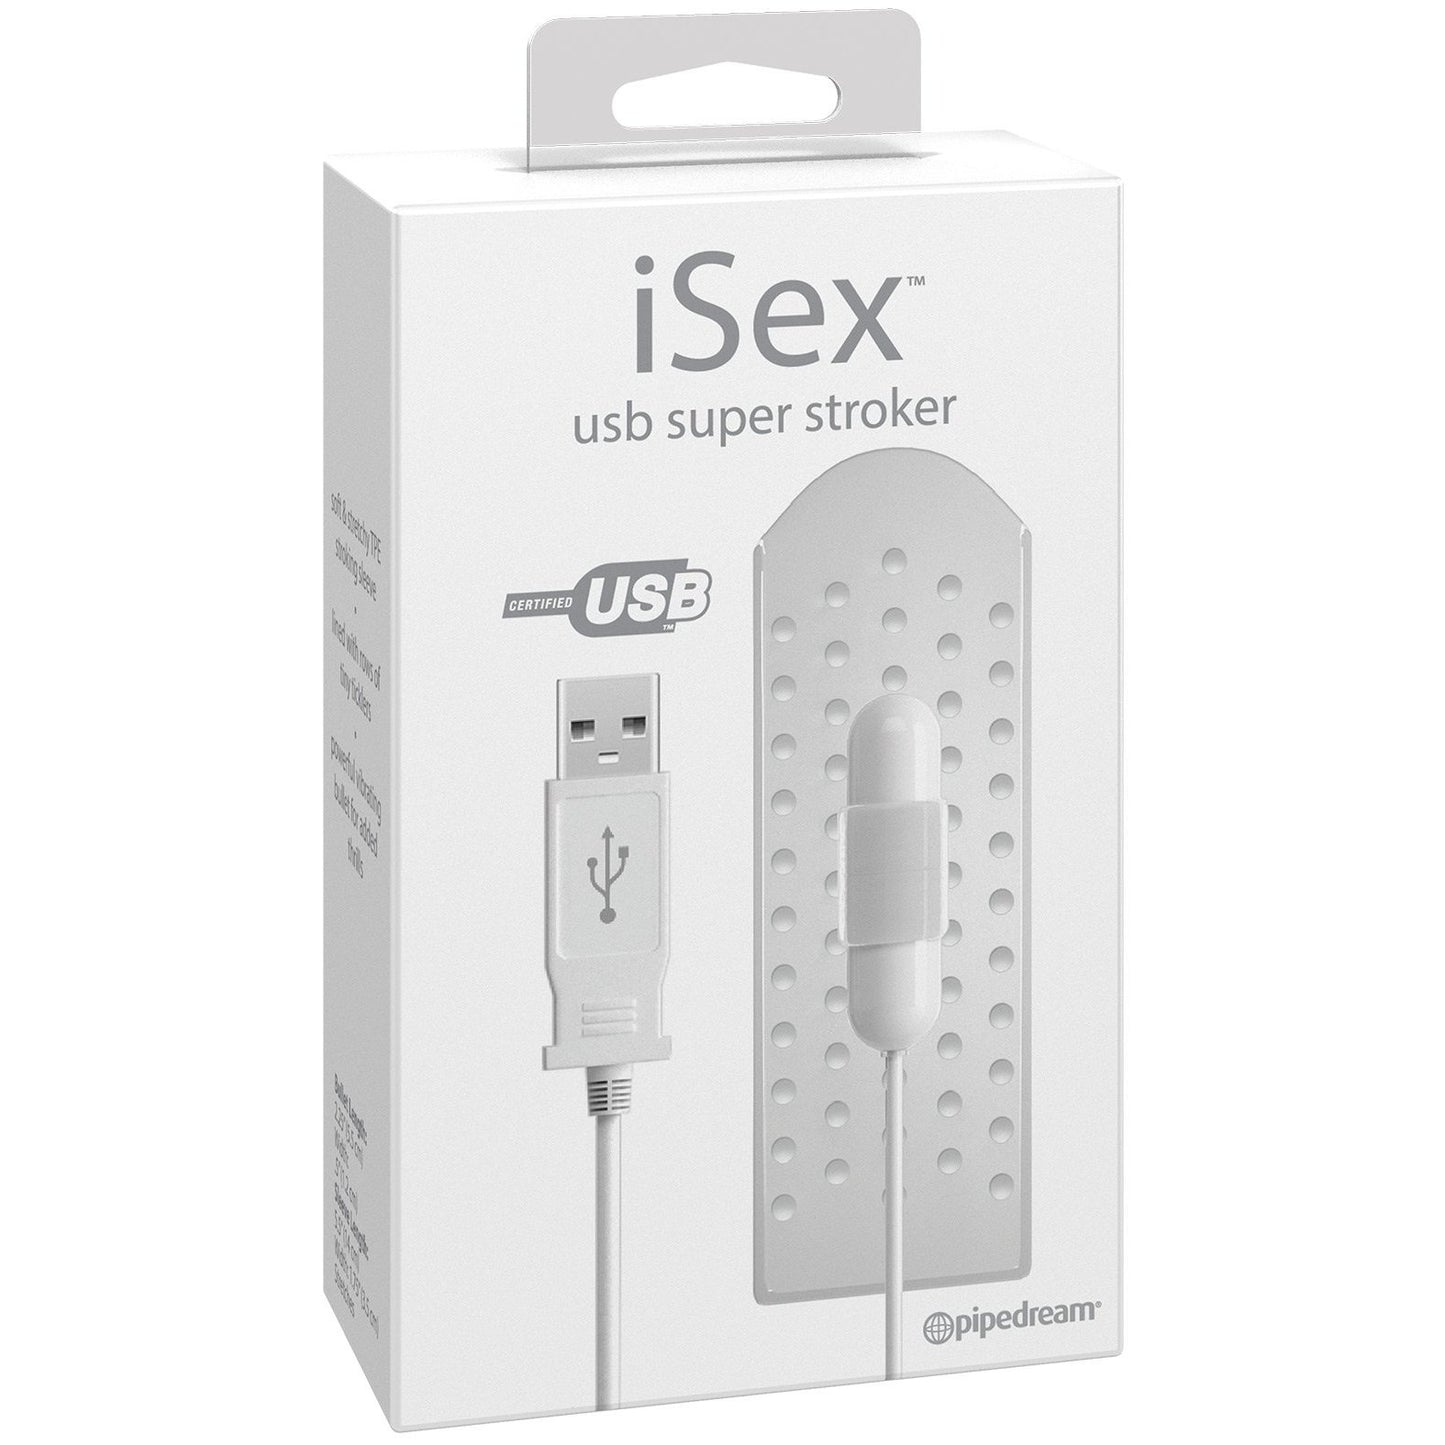 iSex USB Super Stroker